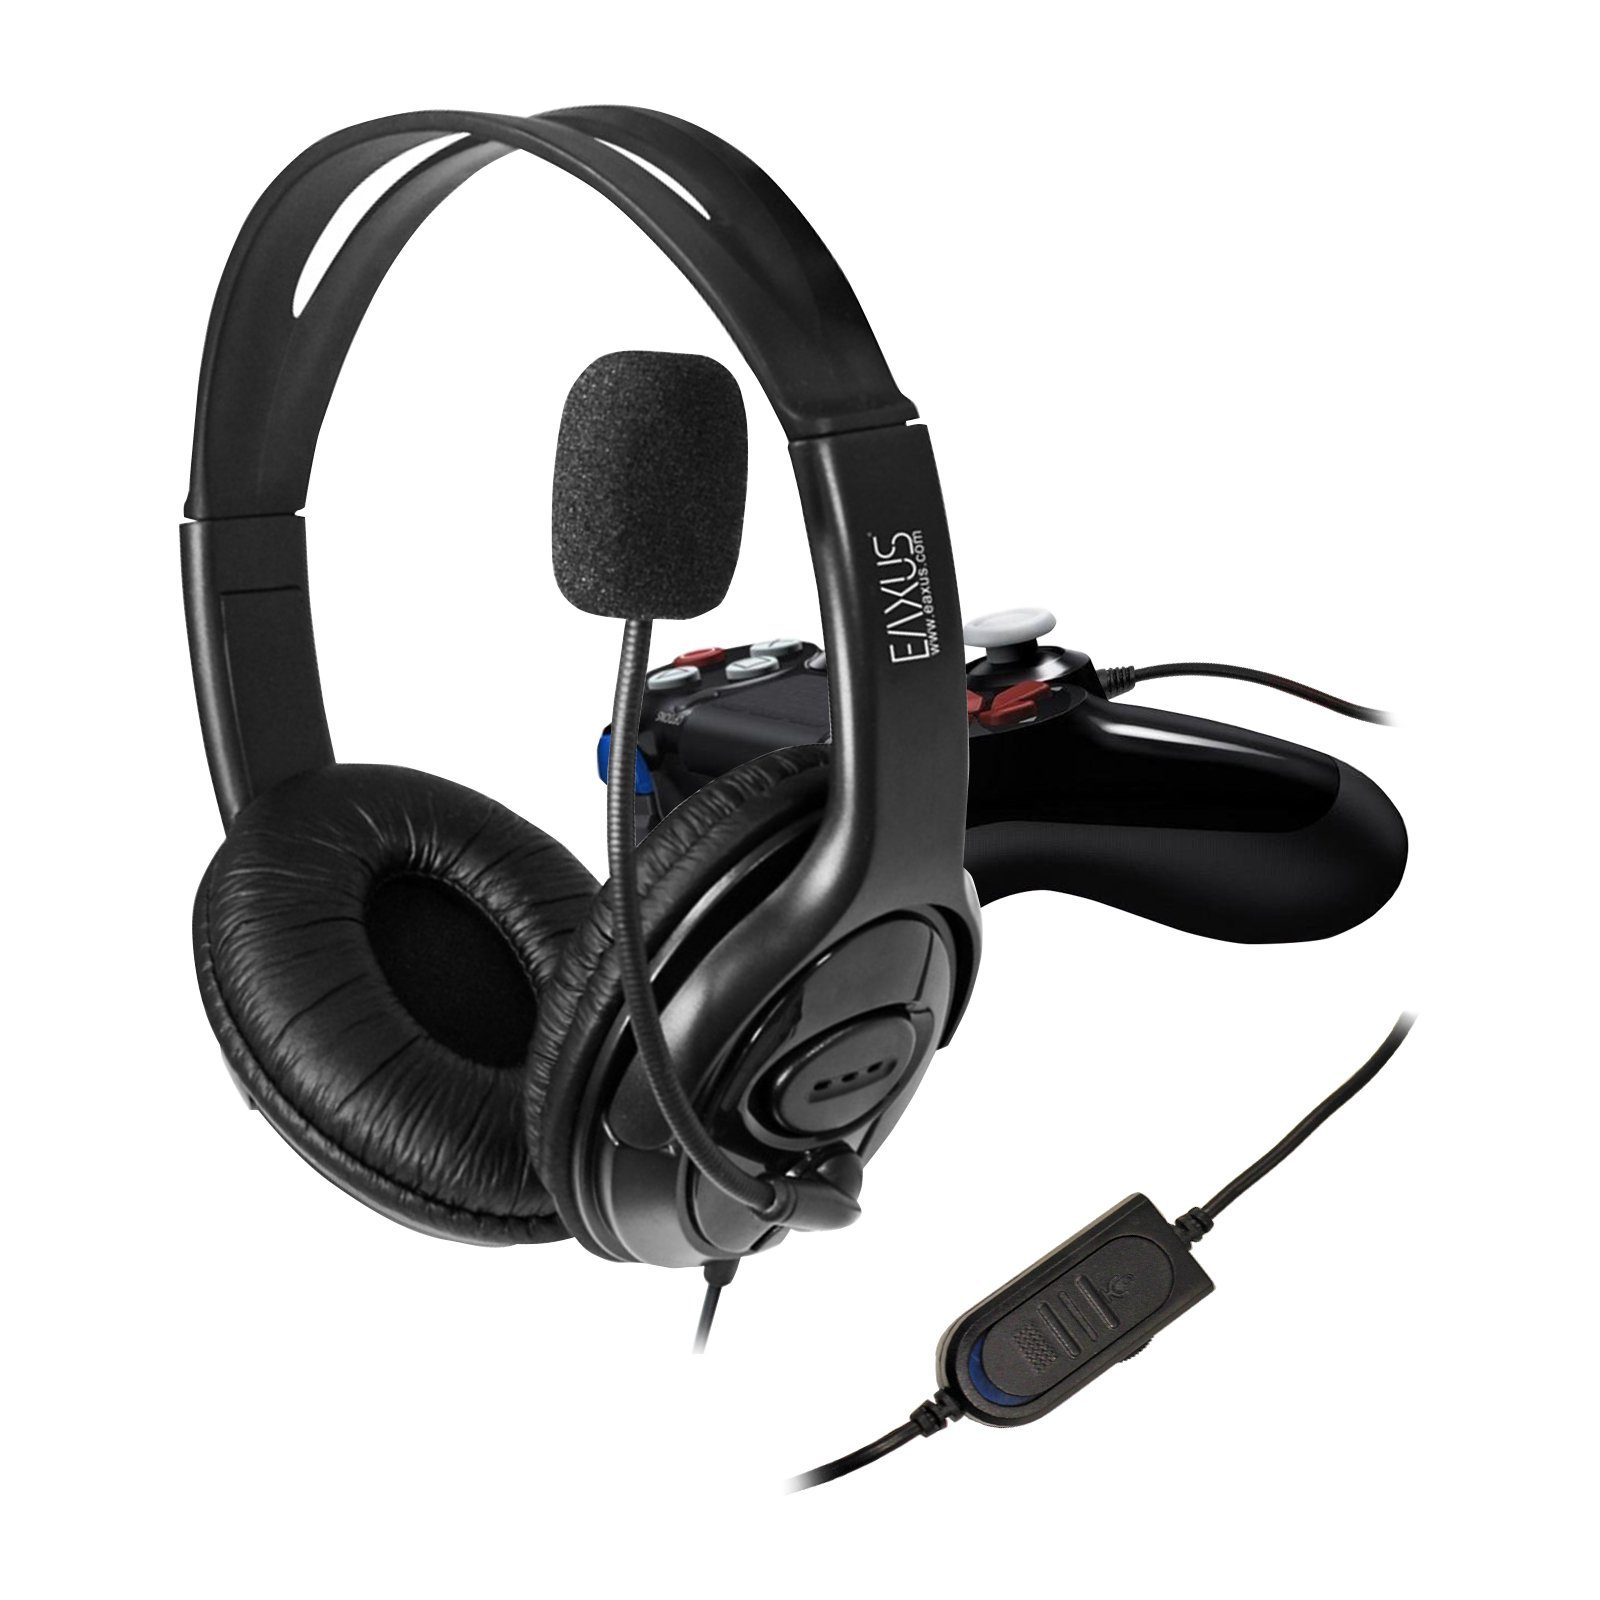 und 4, für PlayStation 5 Controller) Headset (3,5mm Lautstärkeregler Kabel PC direkt für EAXUS Gaming-Headset mit